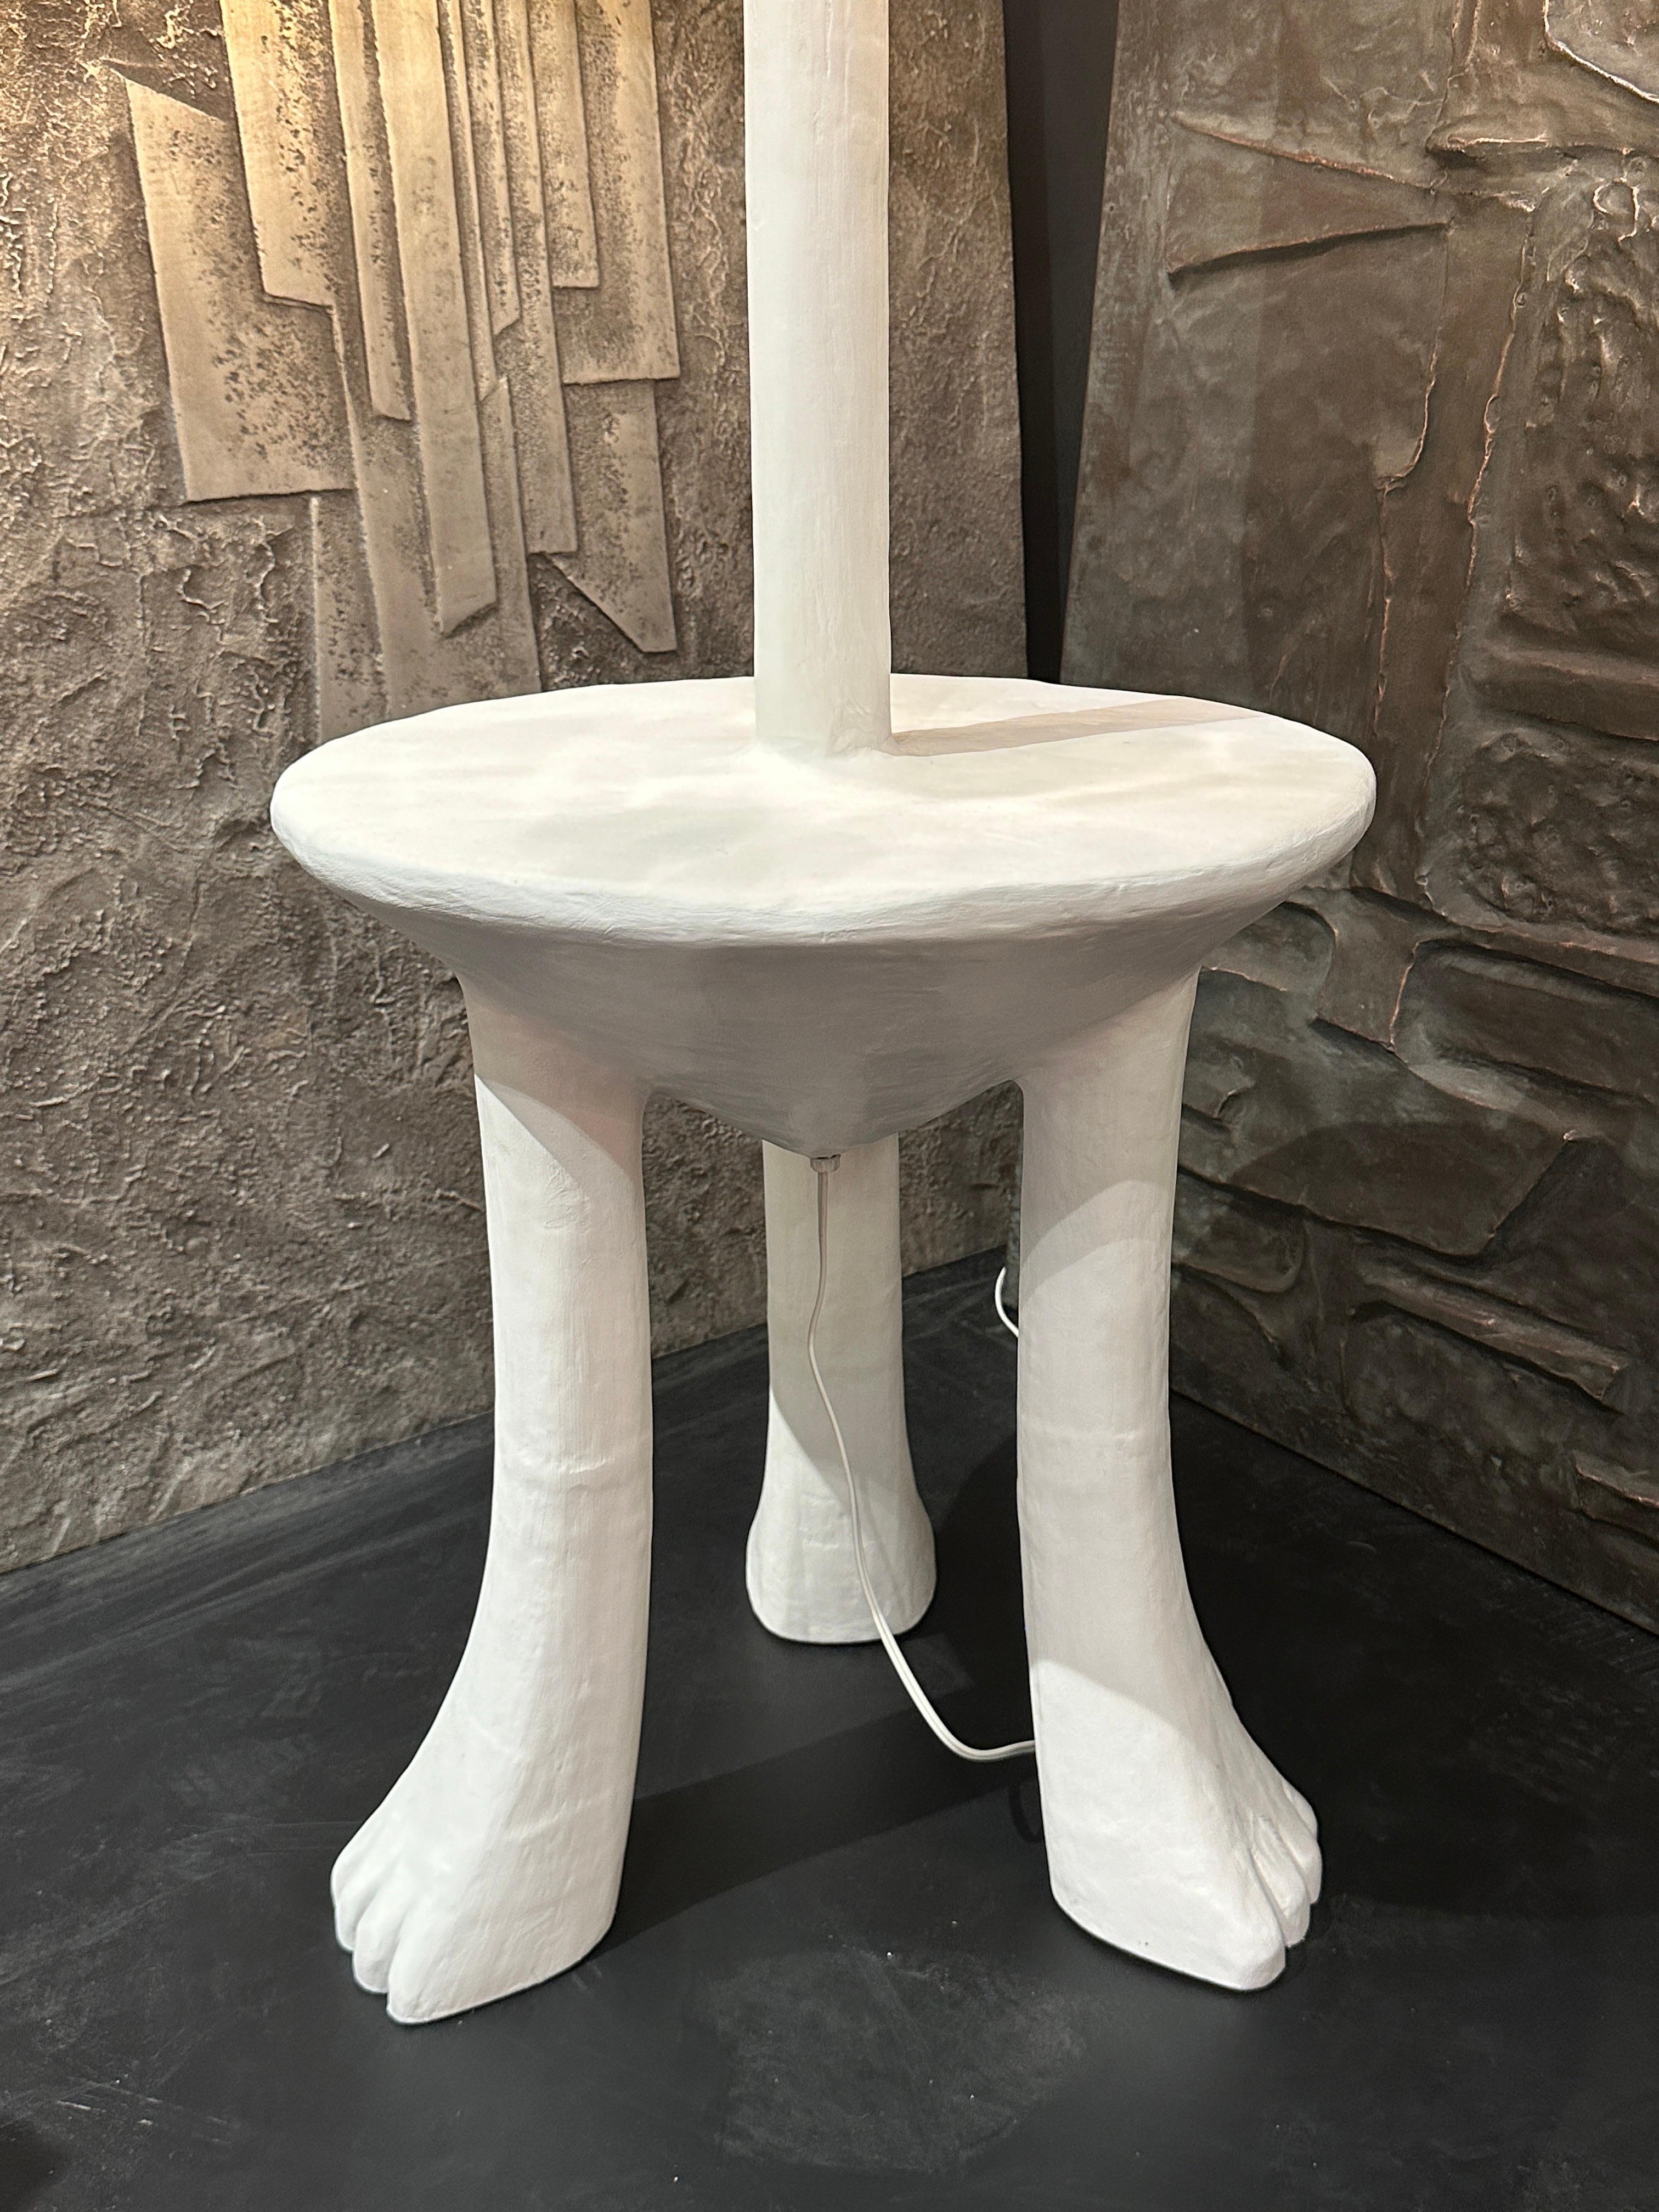 Table d'appoint / lampe de sol primitive en plâtre sur bois sculpté à la main dans le style de John Dickinson. La table a un diamètre de 18 pouces et une hauteur de 20,5 pouces.
Corde blanche avec interrupteur marche/arrêt à pied. L'abat-jour doublé